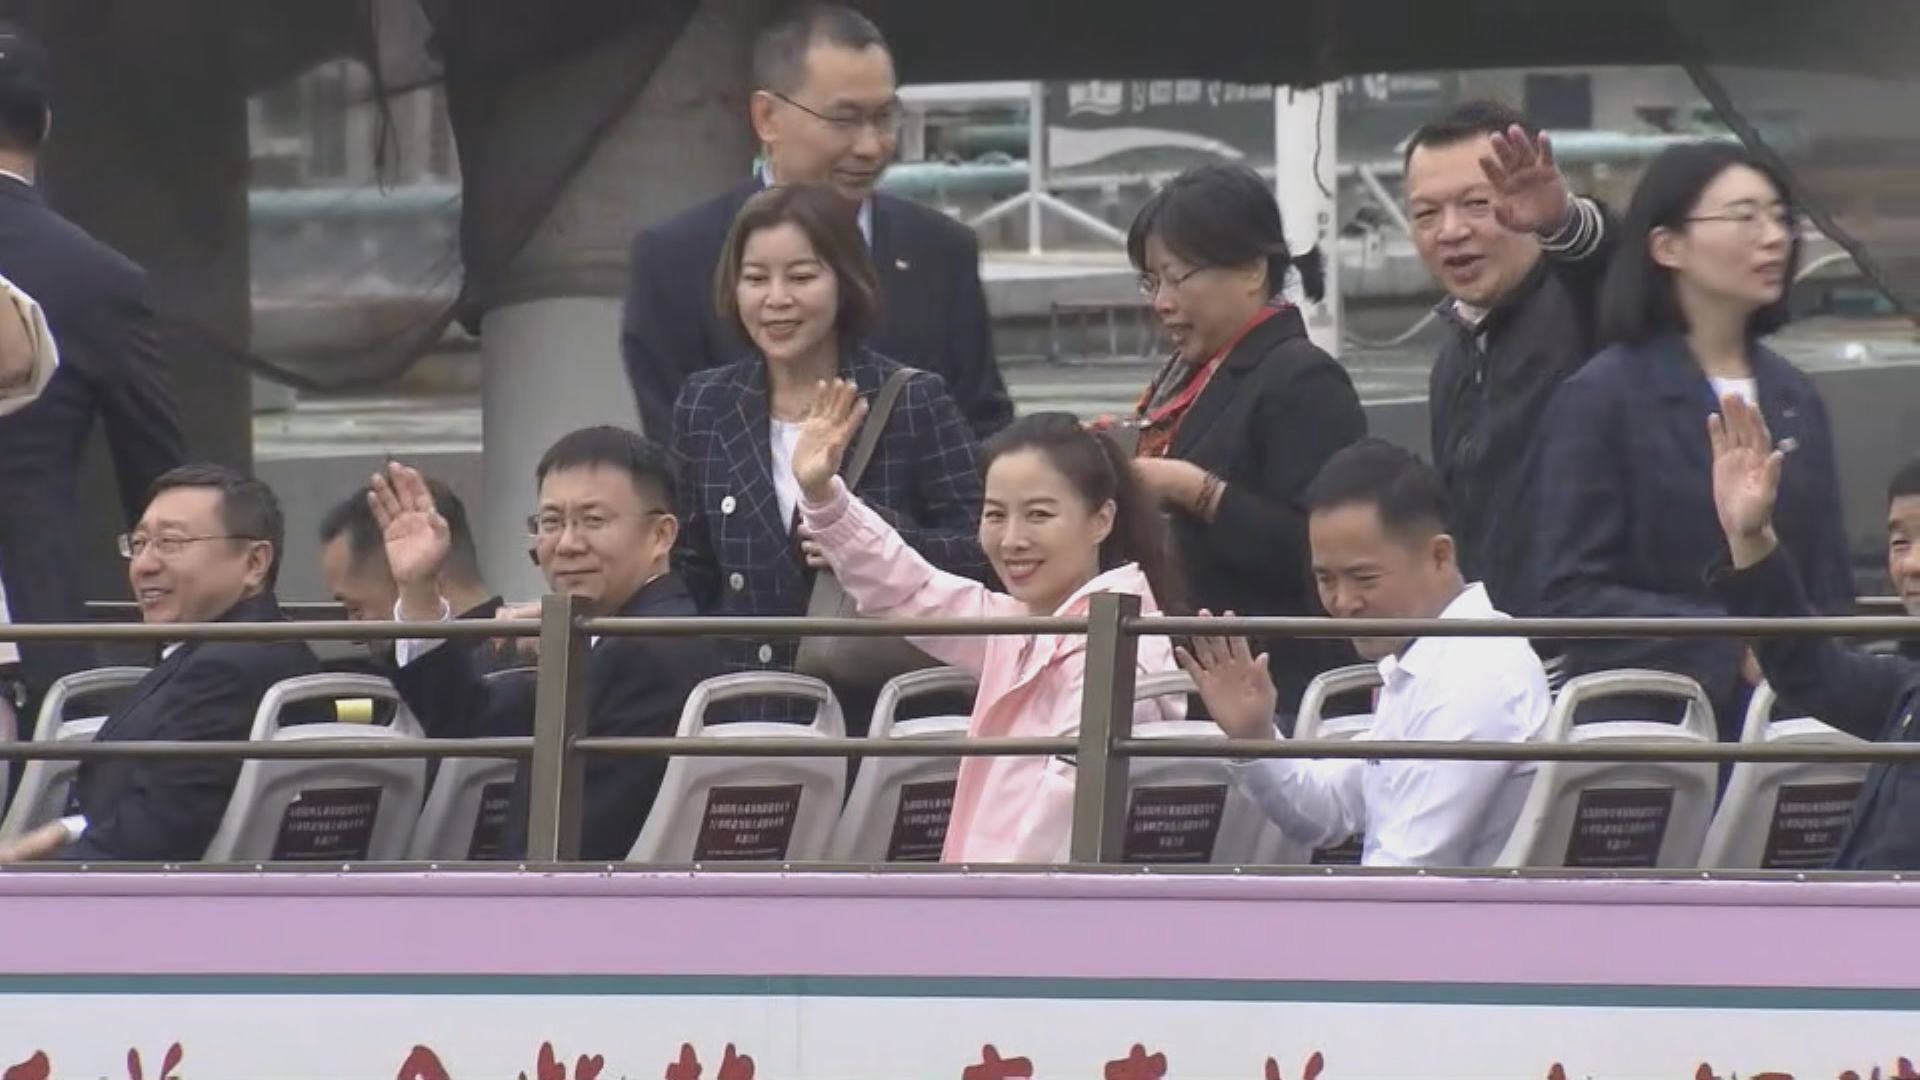 中國載人航天代表團坐開篷巴士遊覽 參觀香港故宮